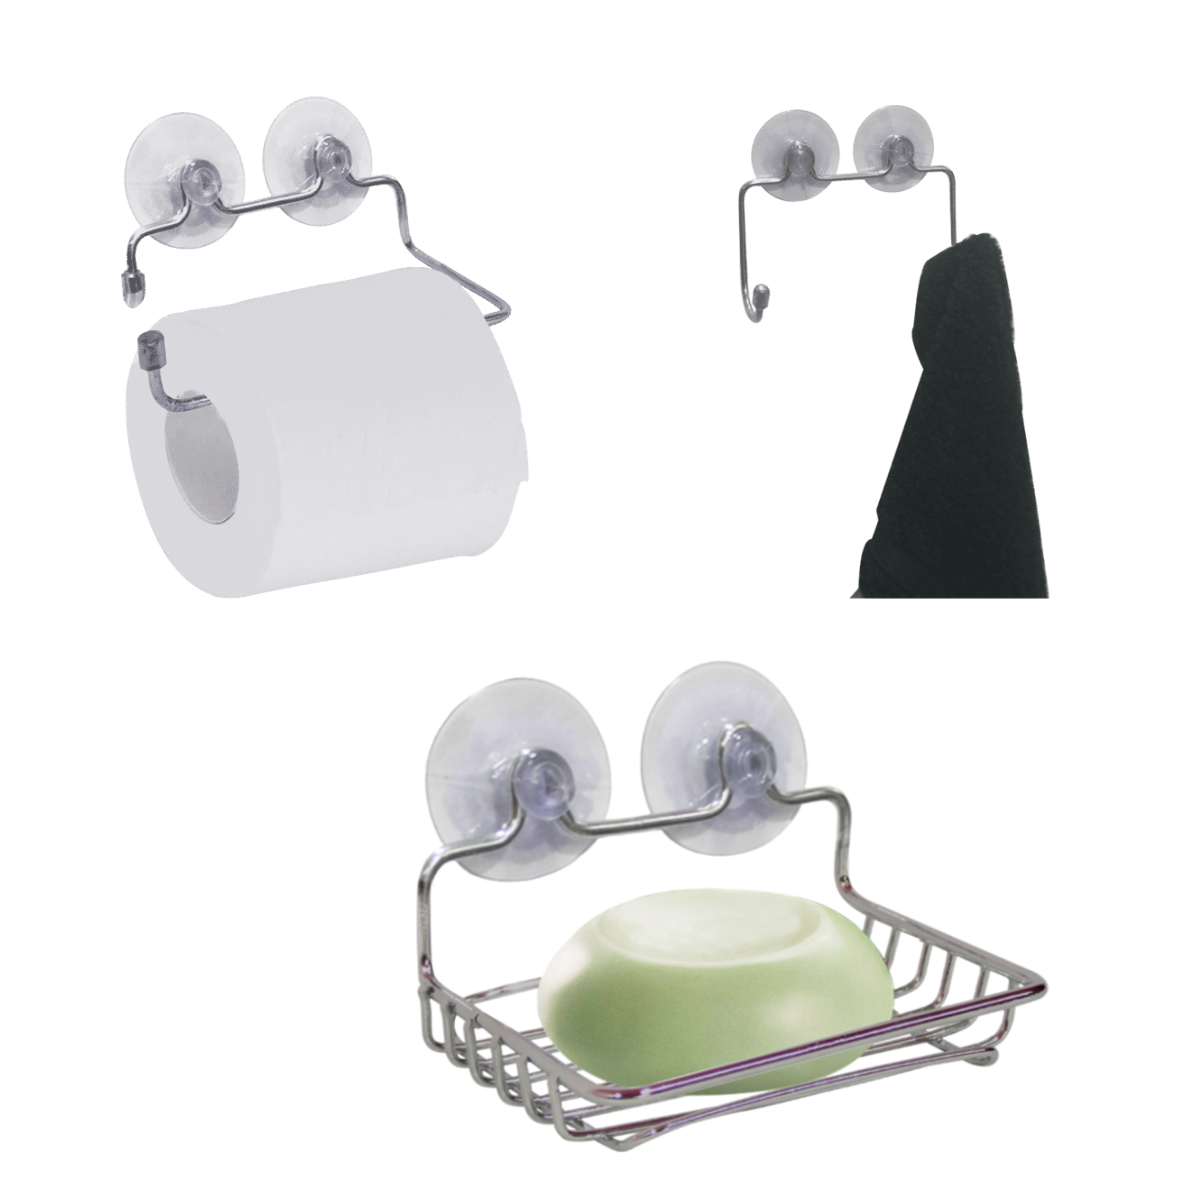 Kit Acessórios para Banheiro com Ventosa Cromado Saboneteira, Suporte Papel Higiênico, Cabide Excele